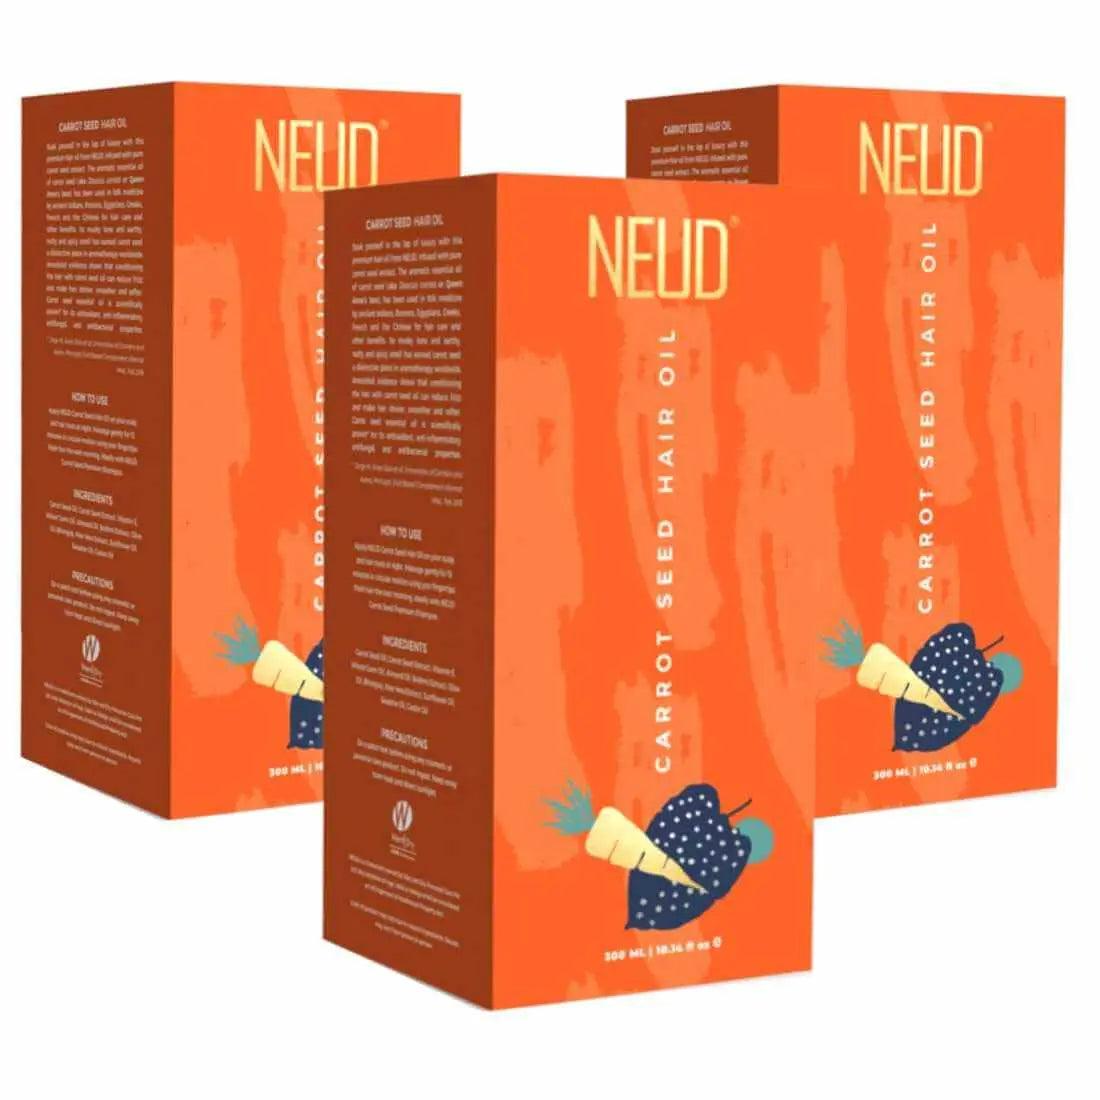 NEUD Carrot Seed Premium Hair Oil for Men & Women - 300ml 9559682300478